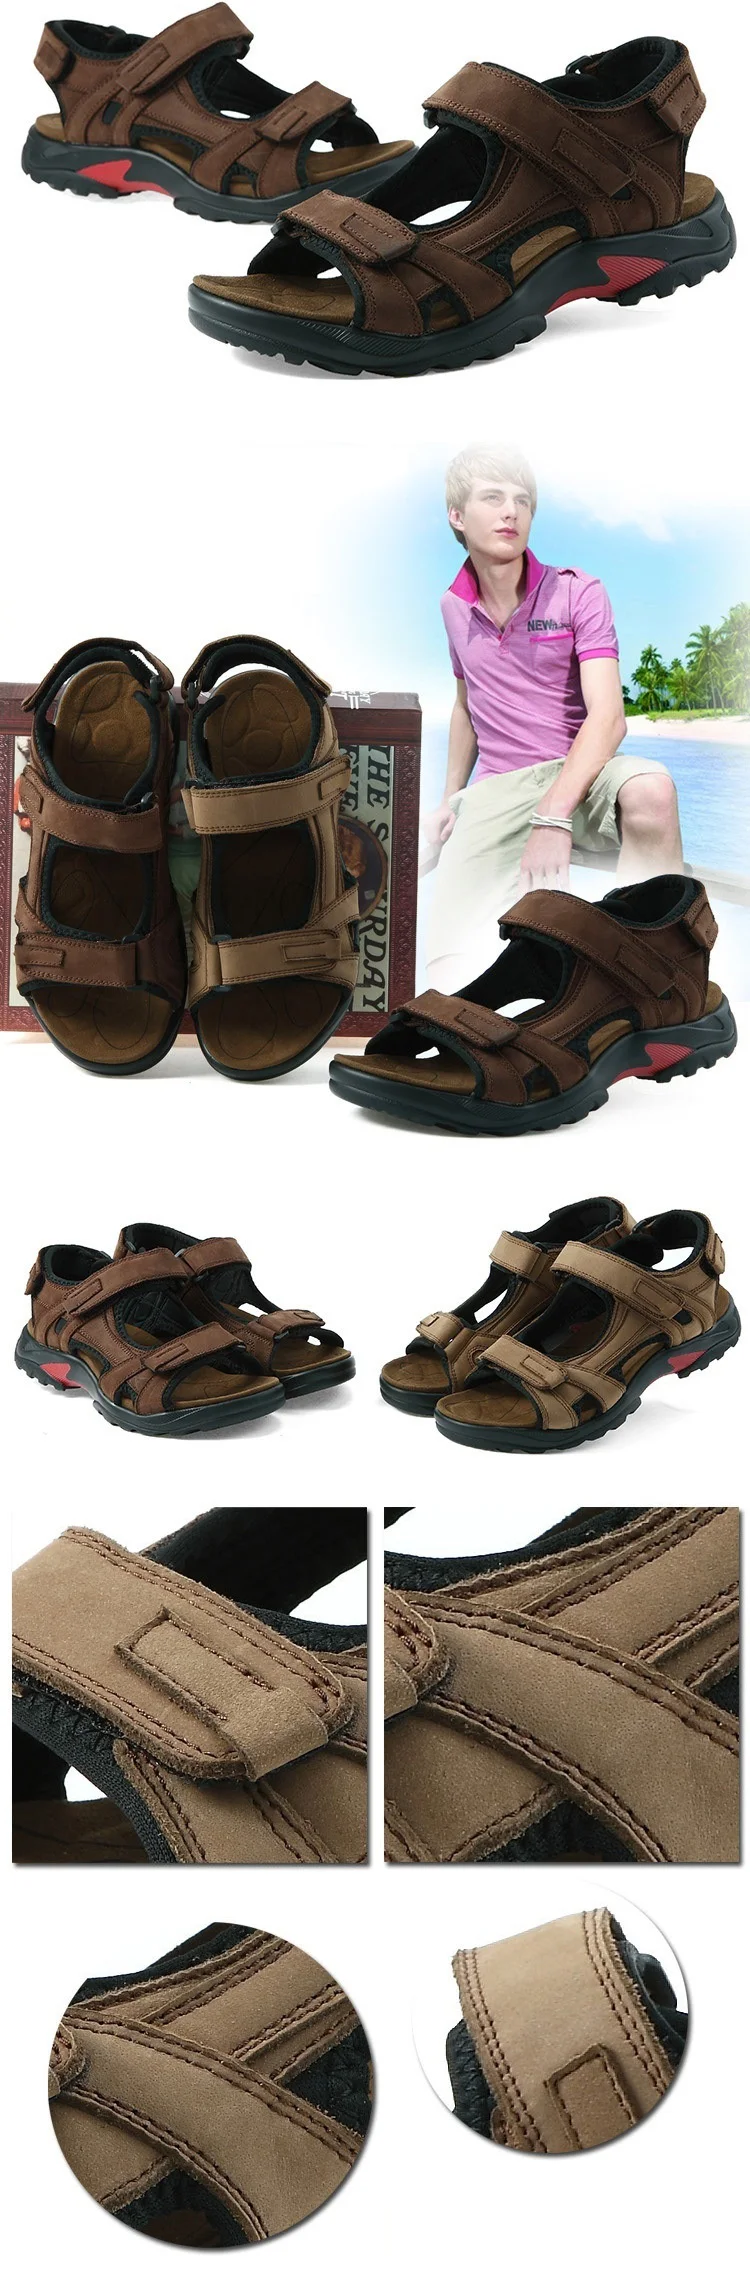 Плюс Размеры 45, 46, 47 48 мужские сандалии новые Лето г. Мужская обувь Пояса из натуральной кожи классической мужской sandalias Повседневное пляжная обувь rmc-659